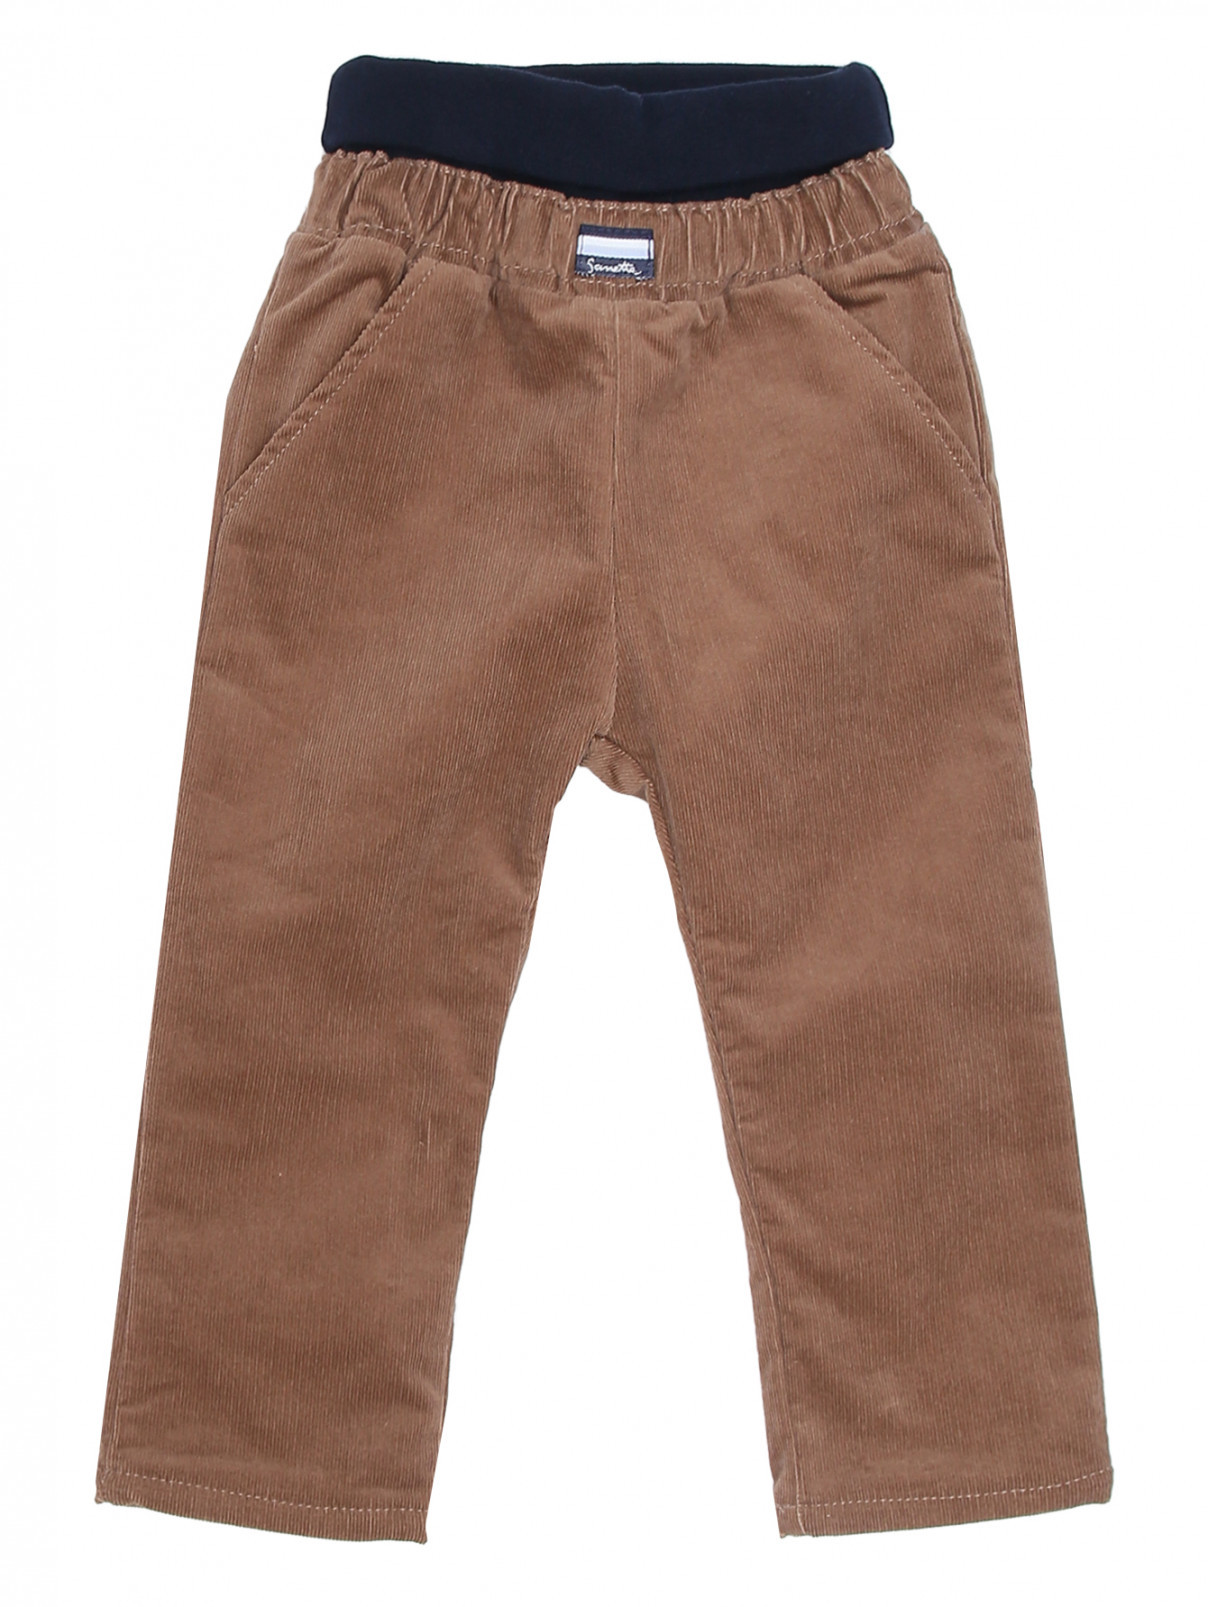 Вельветовые брюки с карманами Sanetta  –  Общий вид  – Цвет:  Коричневый